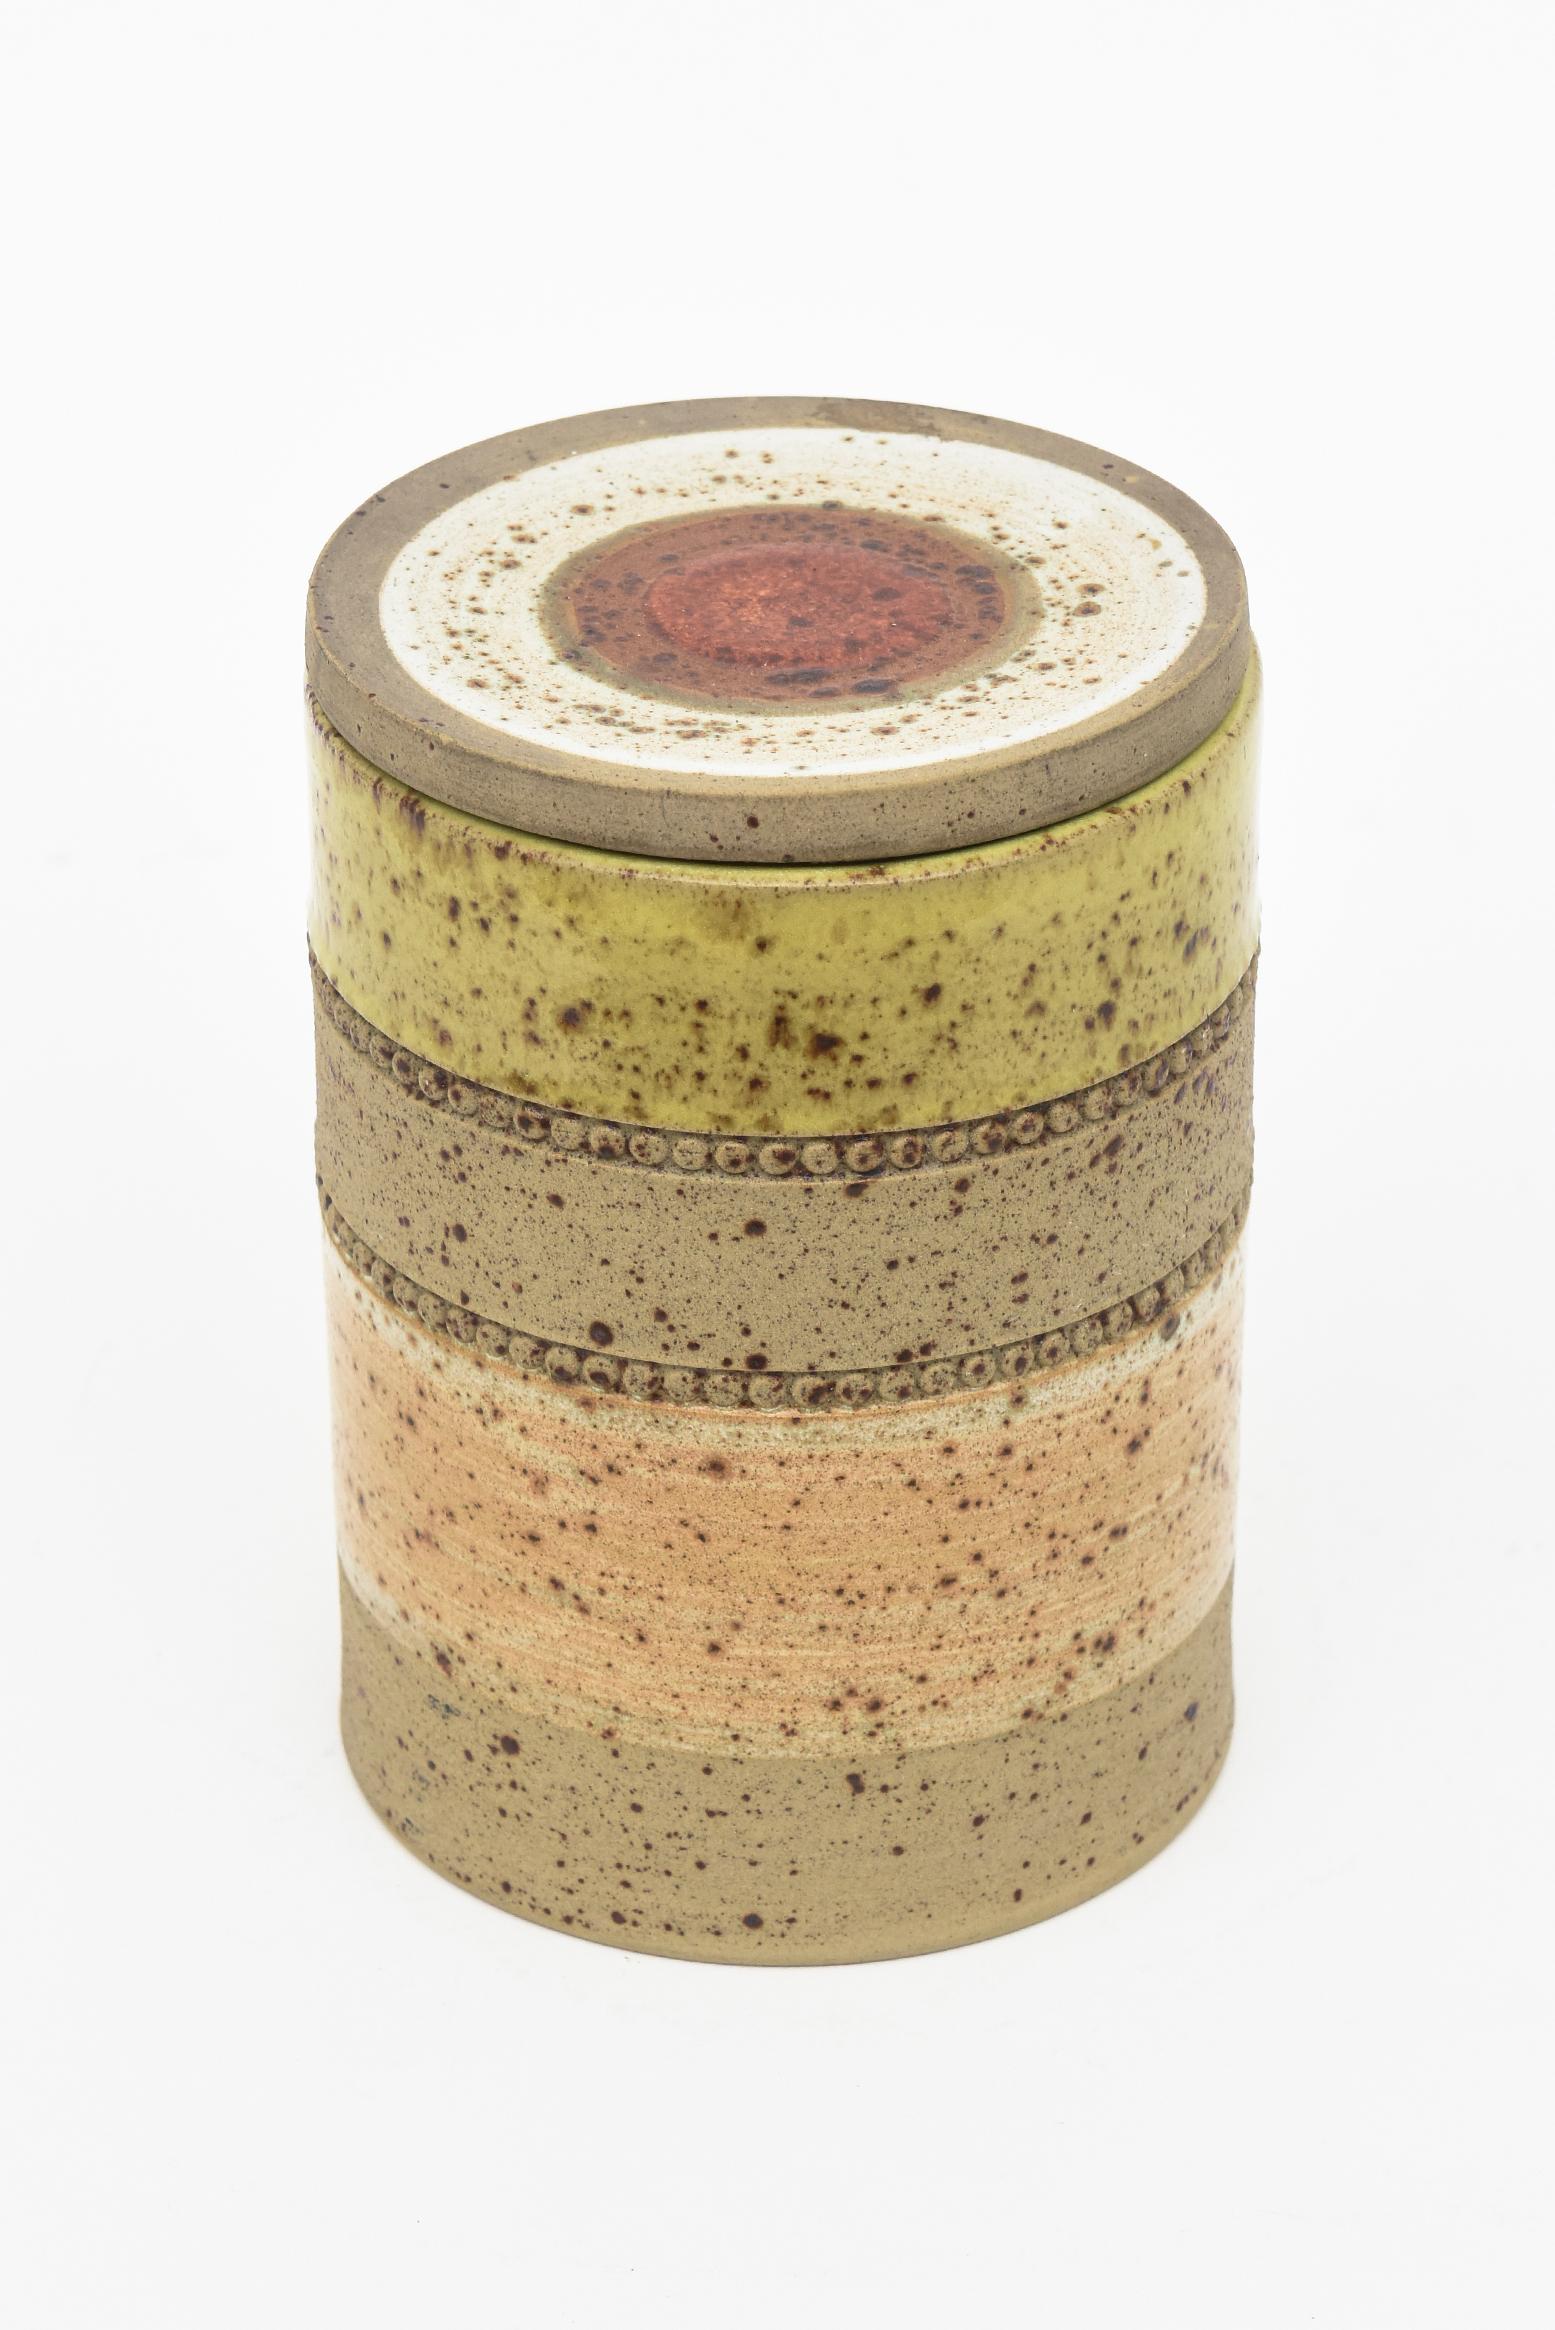 Cette jolie boîte ronde en céramique signée est marquée Denby Made in England. Il s'agit d'une combinaison de couleurs émaillées et non émaillées de larges bandes avec deux rangées de perles. La partie supérieure est ornée d'un œil de bœuf rouge au